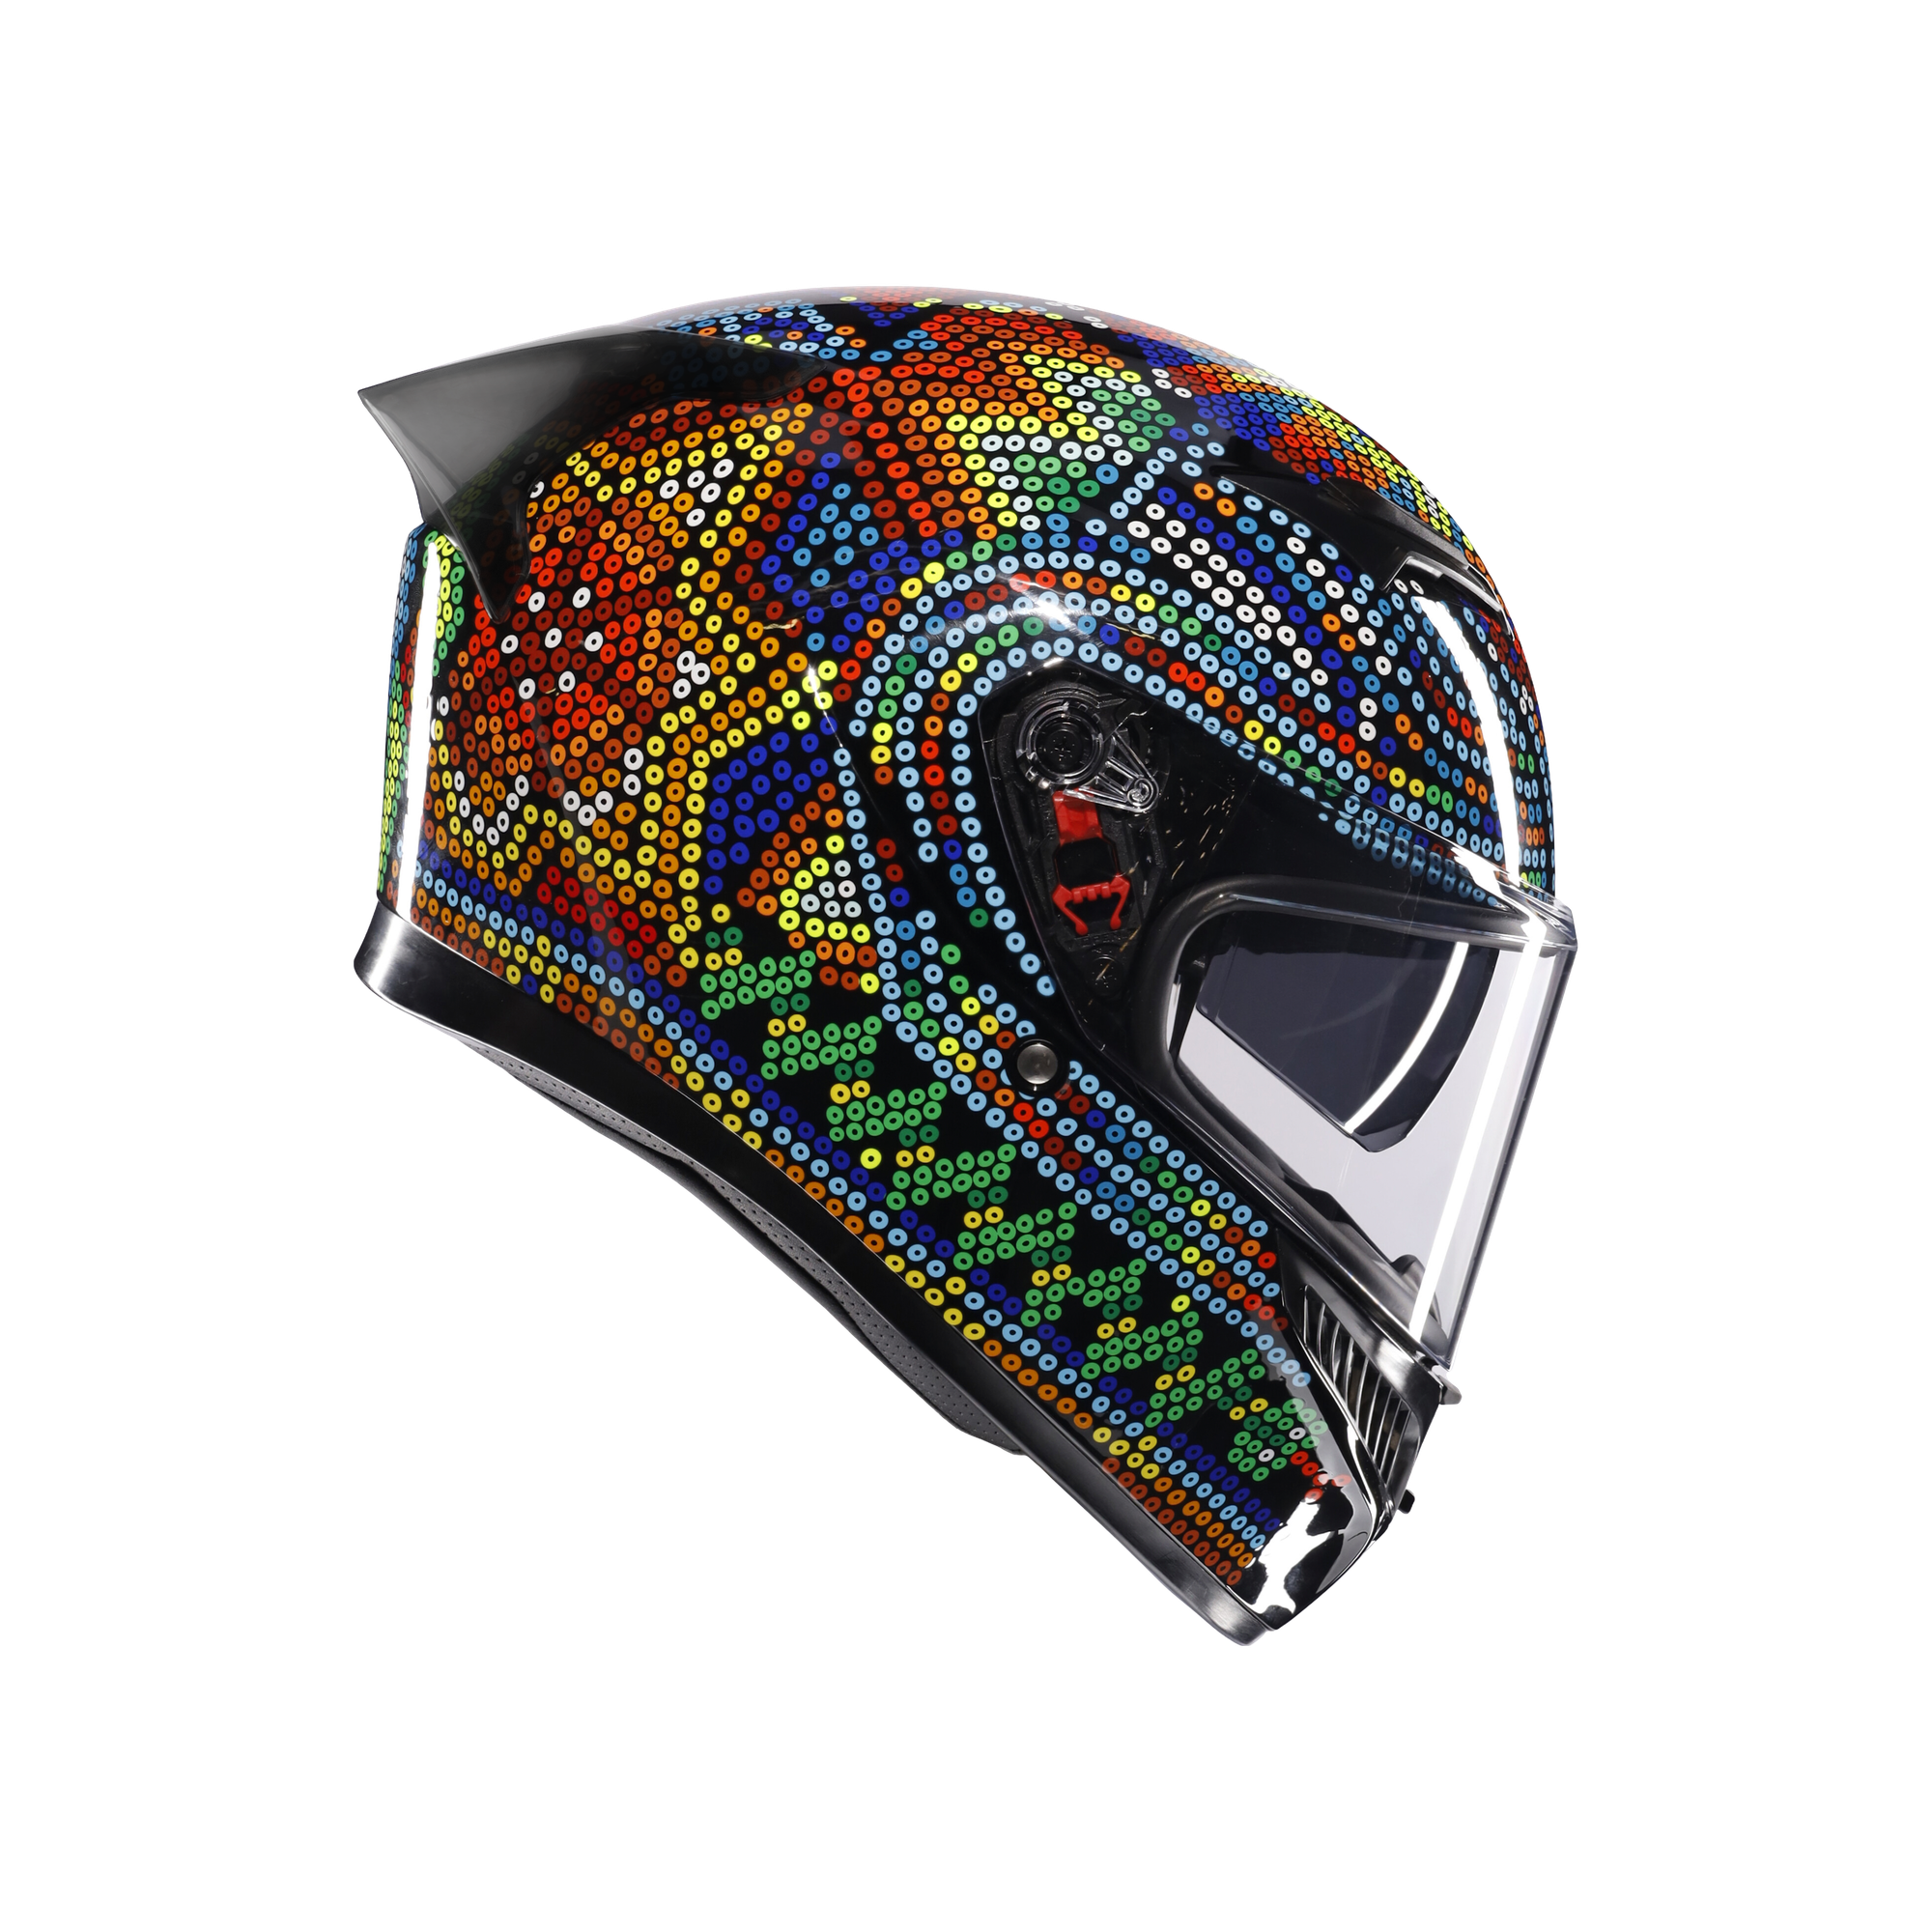 フルフェイスヘルメット | K3 AGV JIST MPLK Asian Fit 001-ROSSI WINTER TEST 2018 SG認証